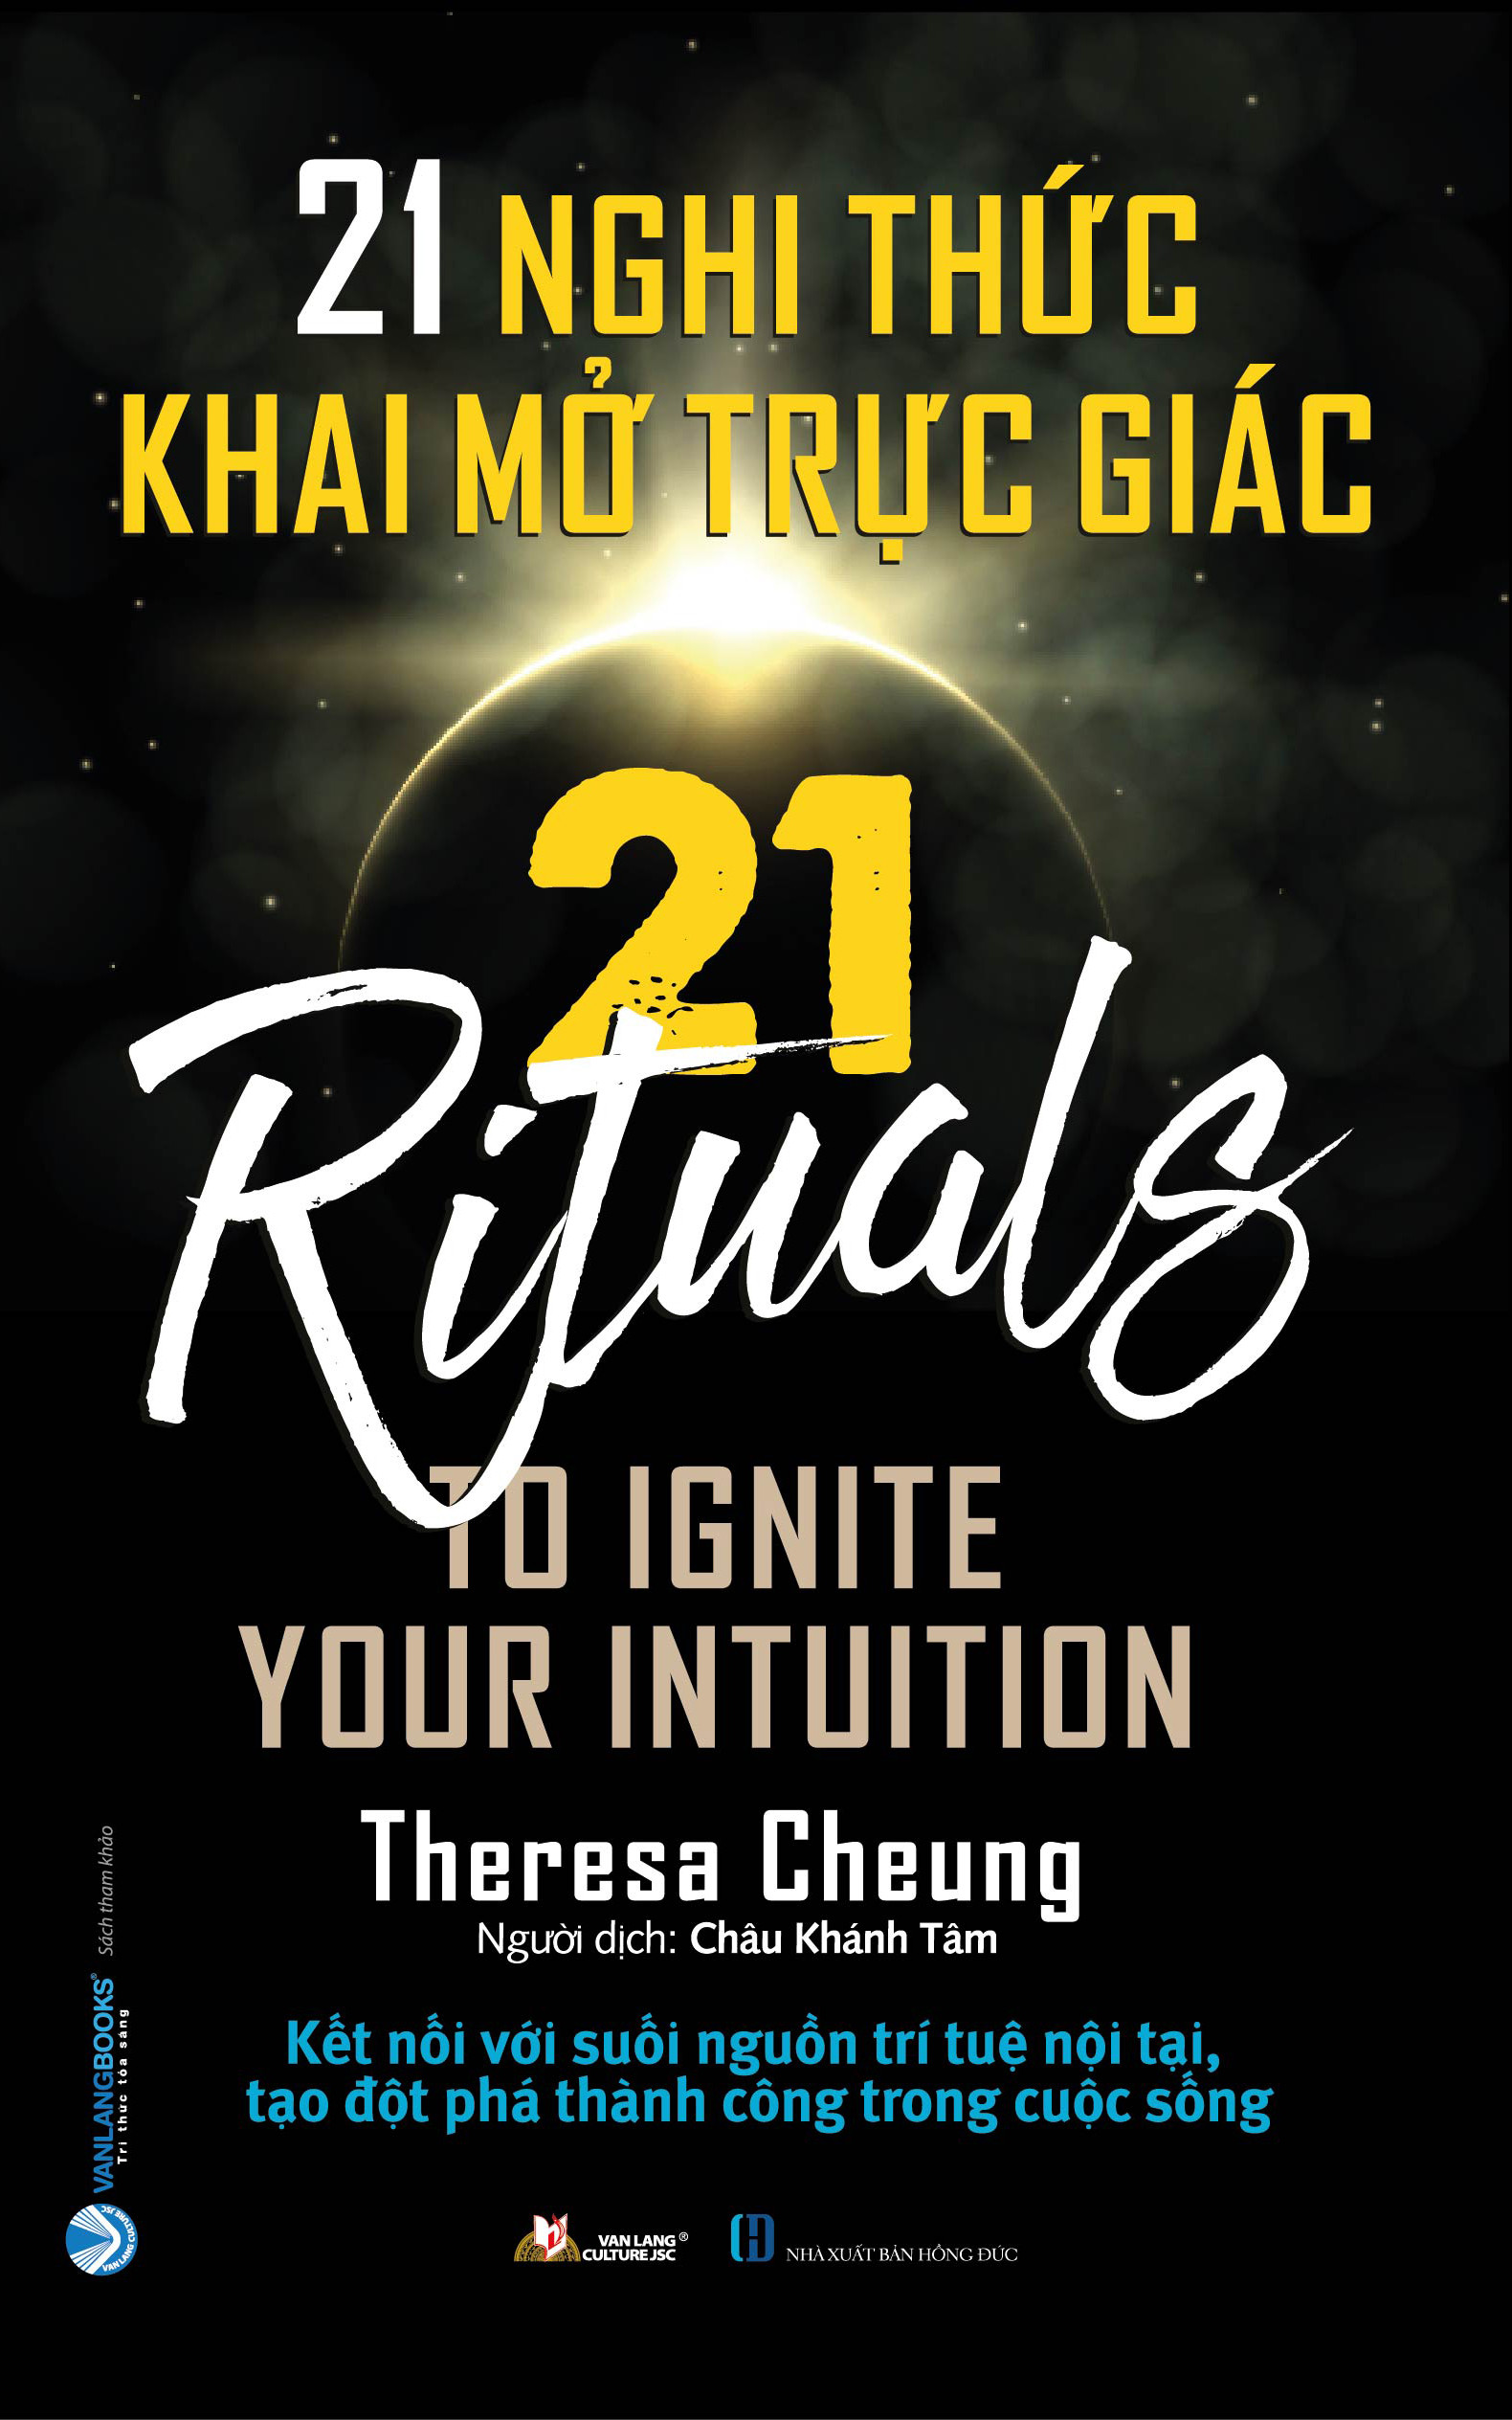 21 NGHI THỨC KHAI MỞ TRỰC GIÁC - 21 NGHI THỨC THAY ĐỔI CUỘC ĐỜI - Tác giả Theresa Cheung (bộ 2 cuốn, bìa mềm)